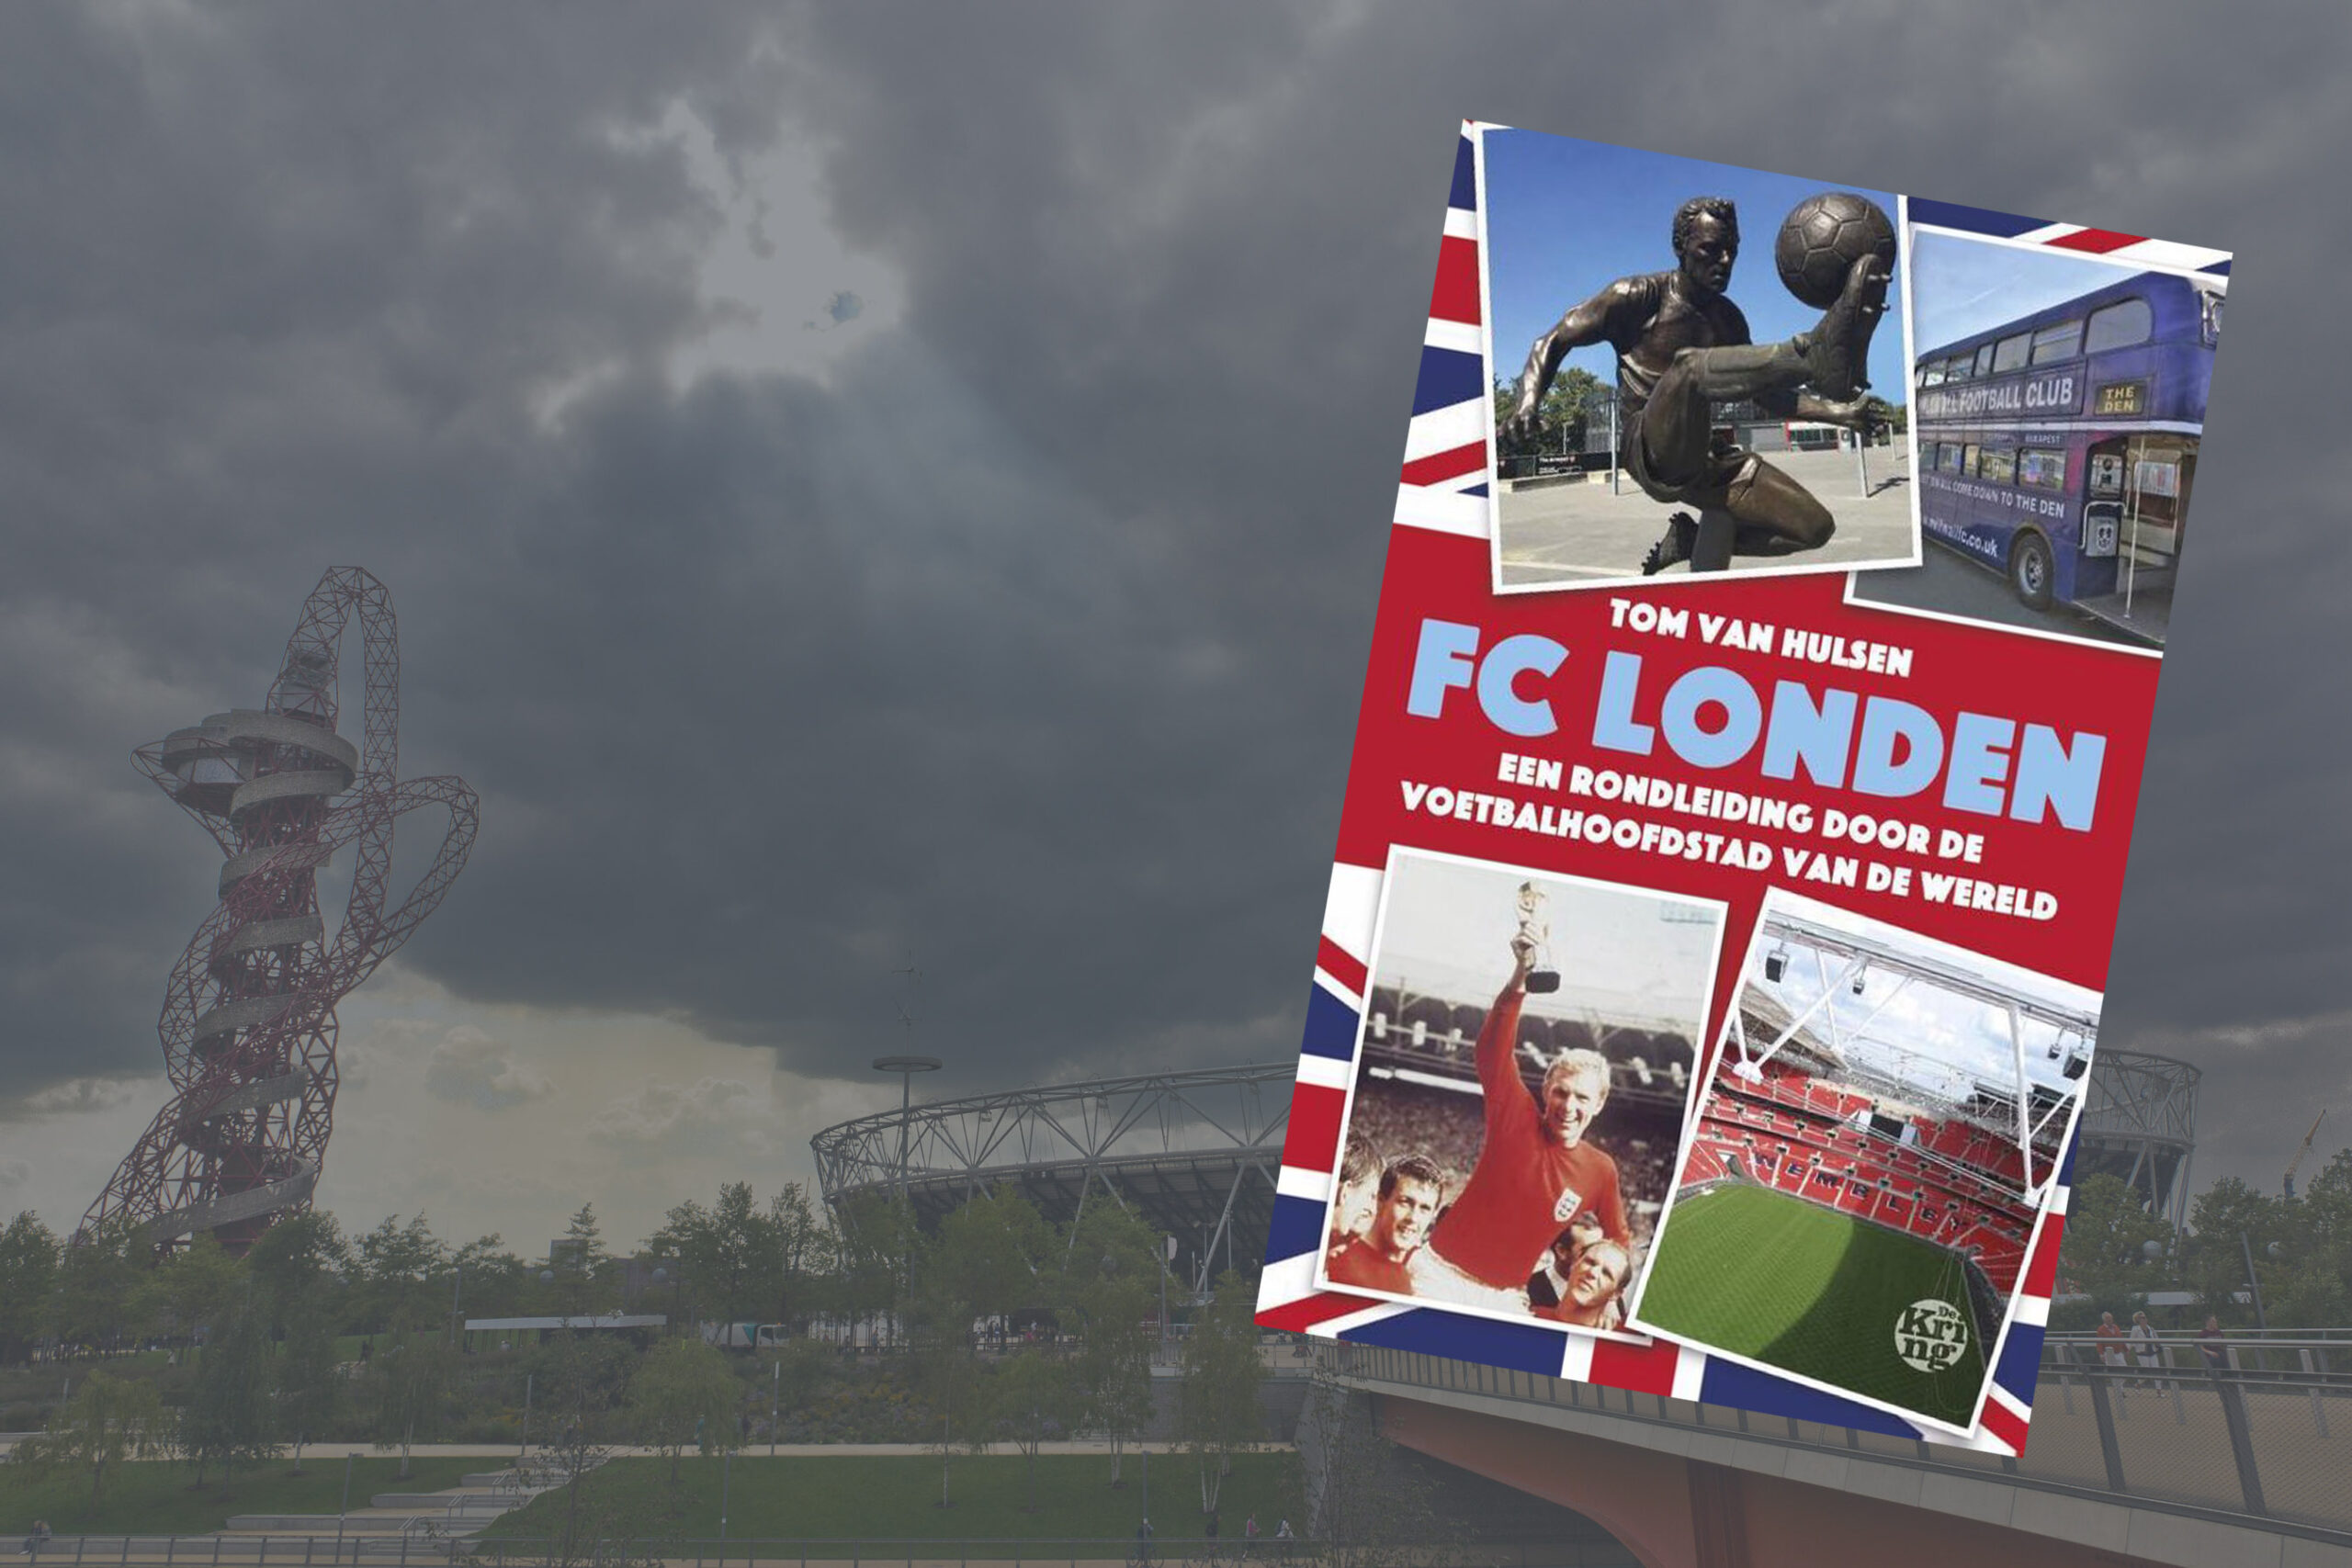 FC Londen – Tom van Hulsen